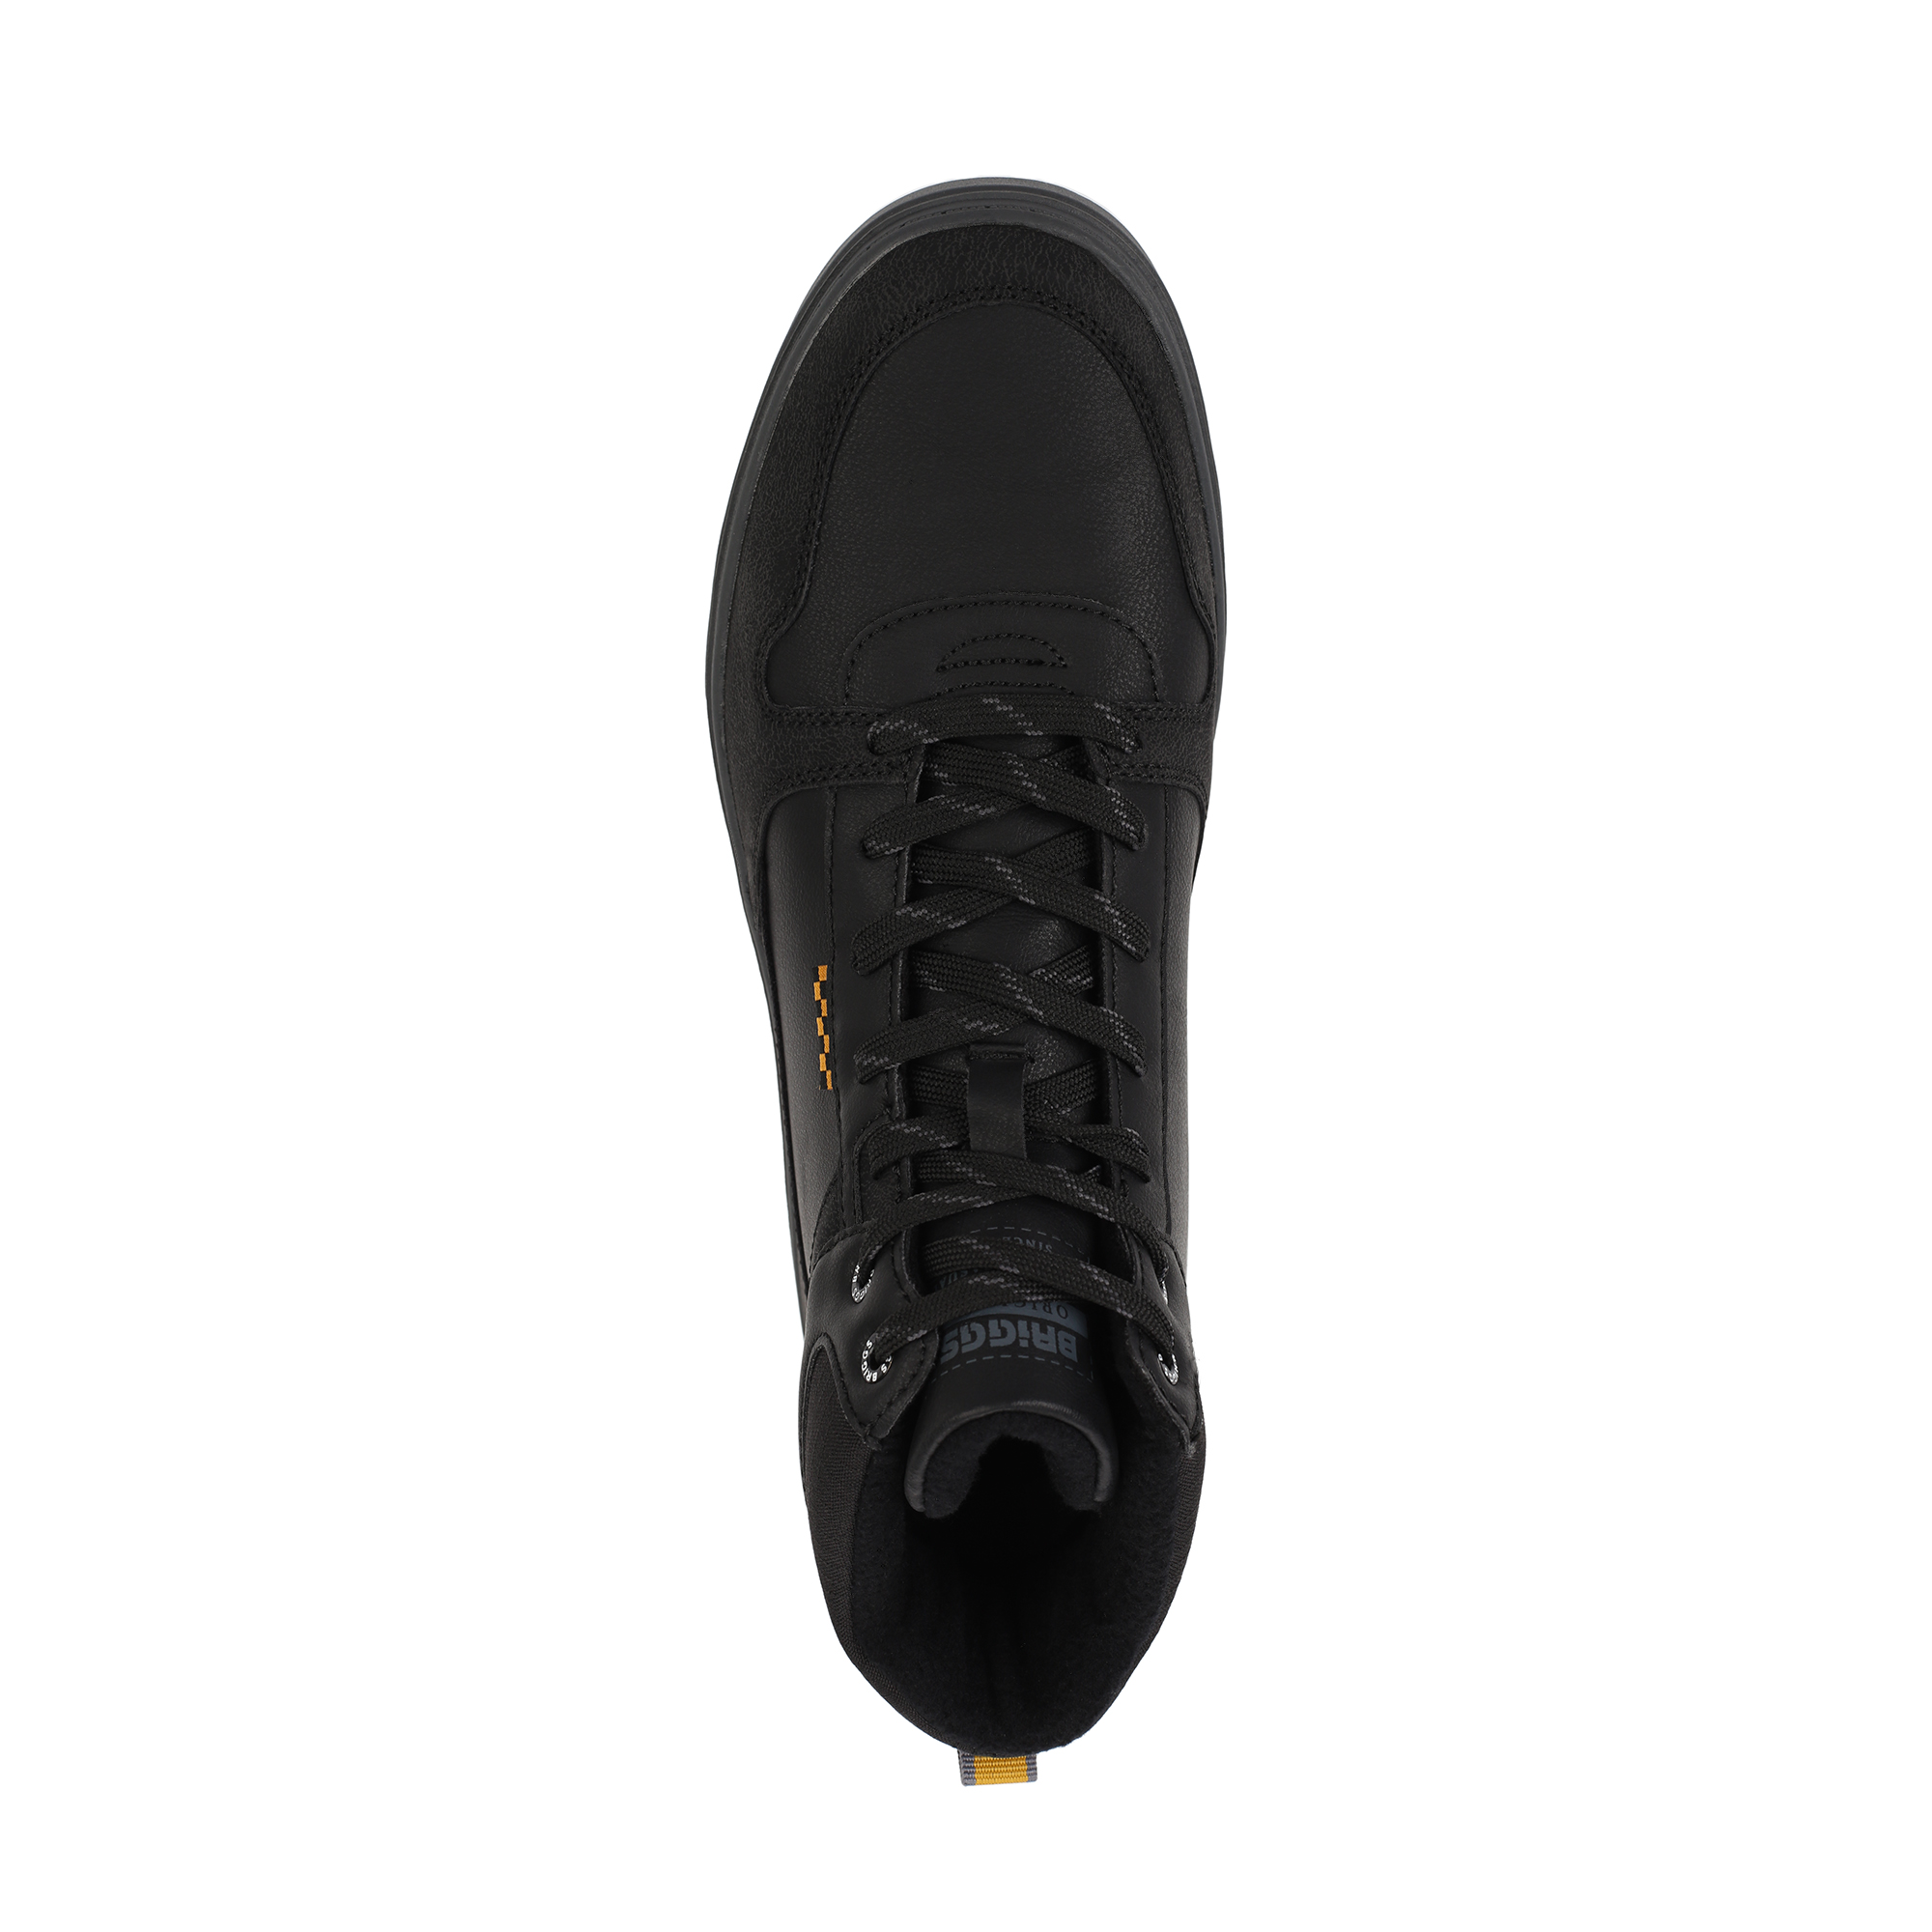 Ботинки BRIGGS 018-112C-2602, цвет черный, размер 40 - фото 5